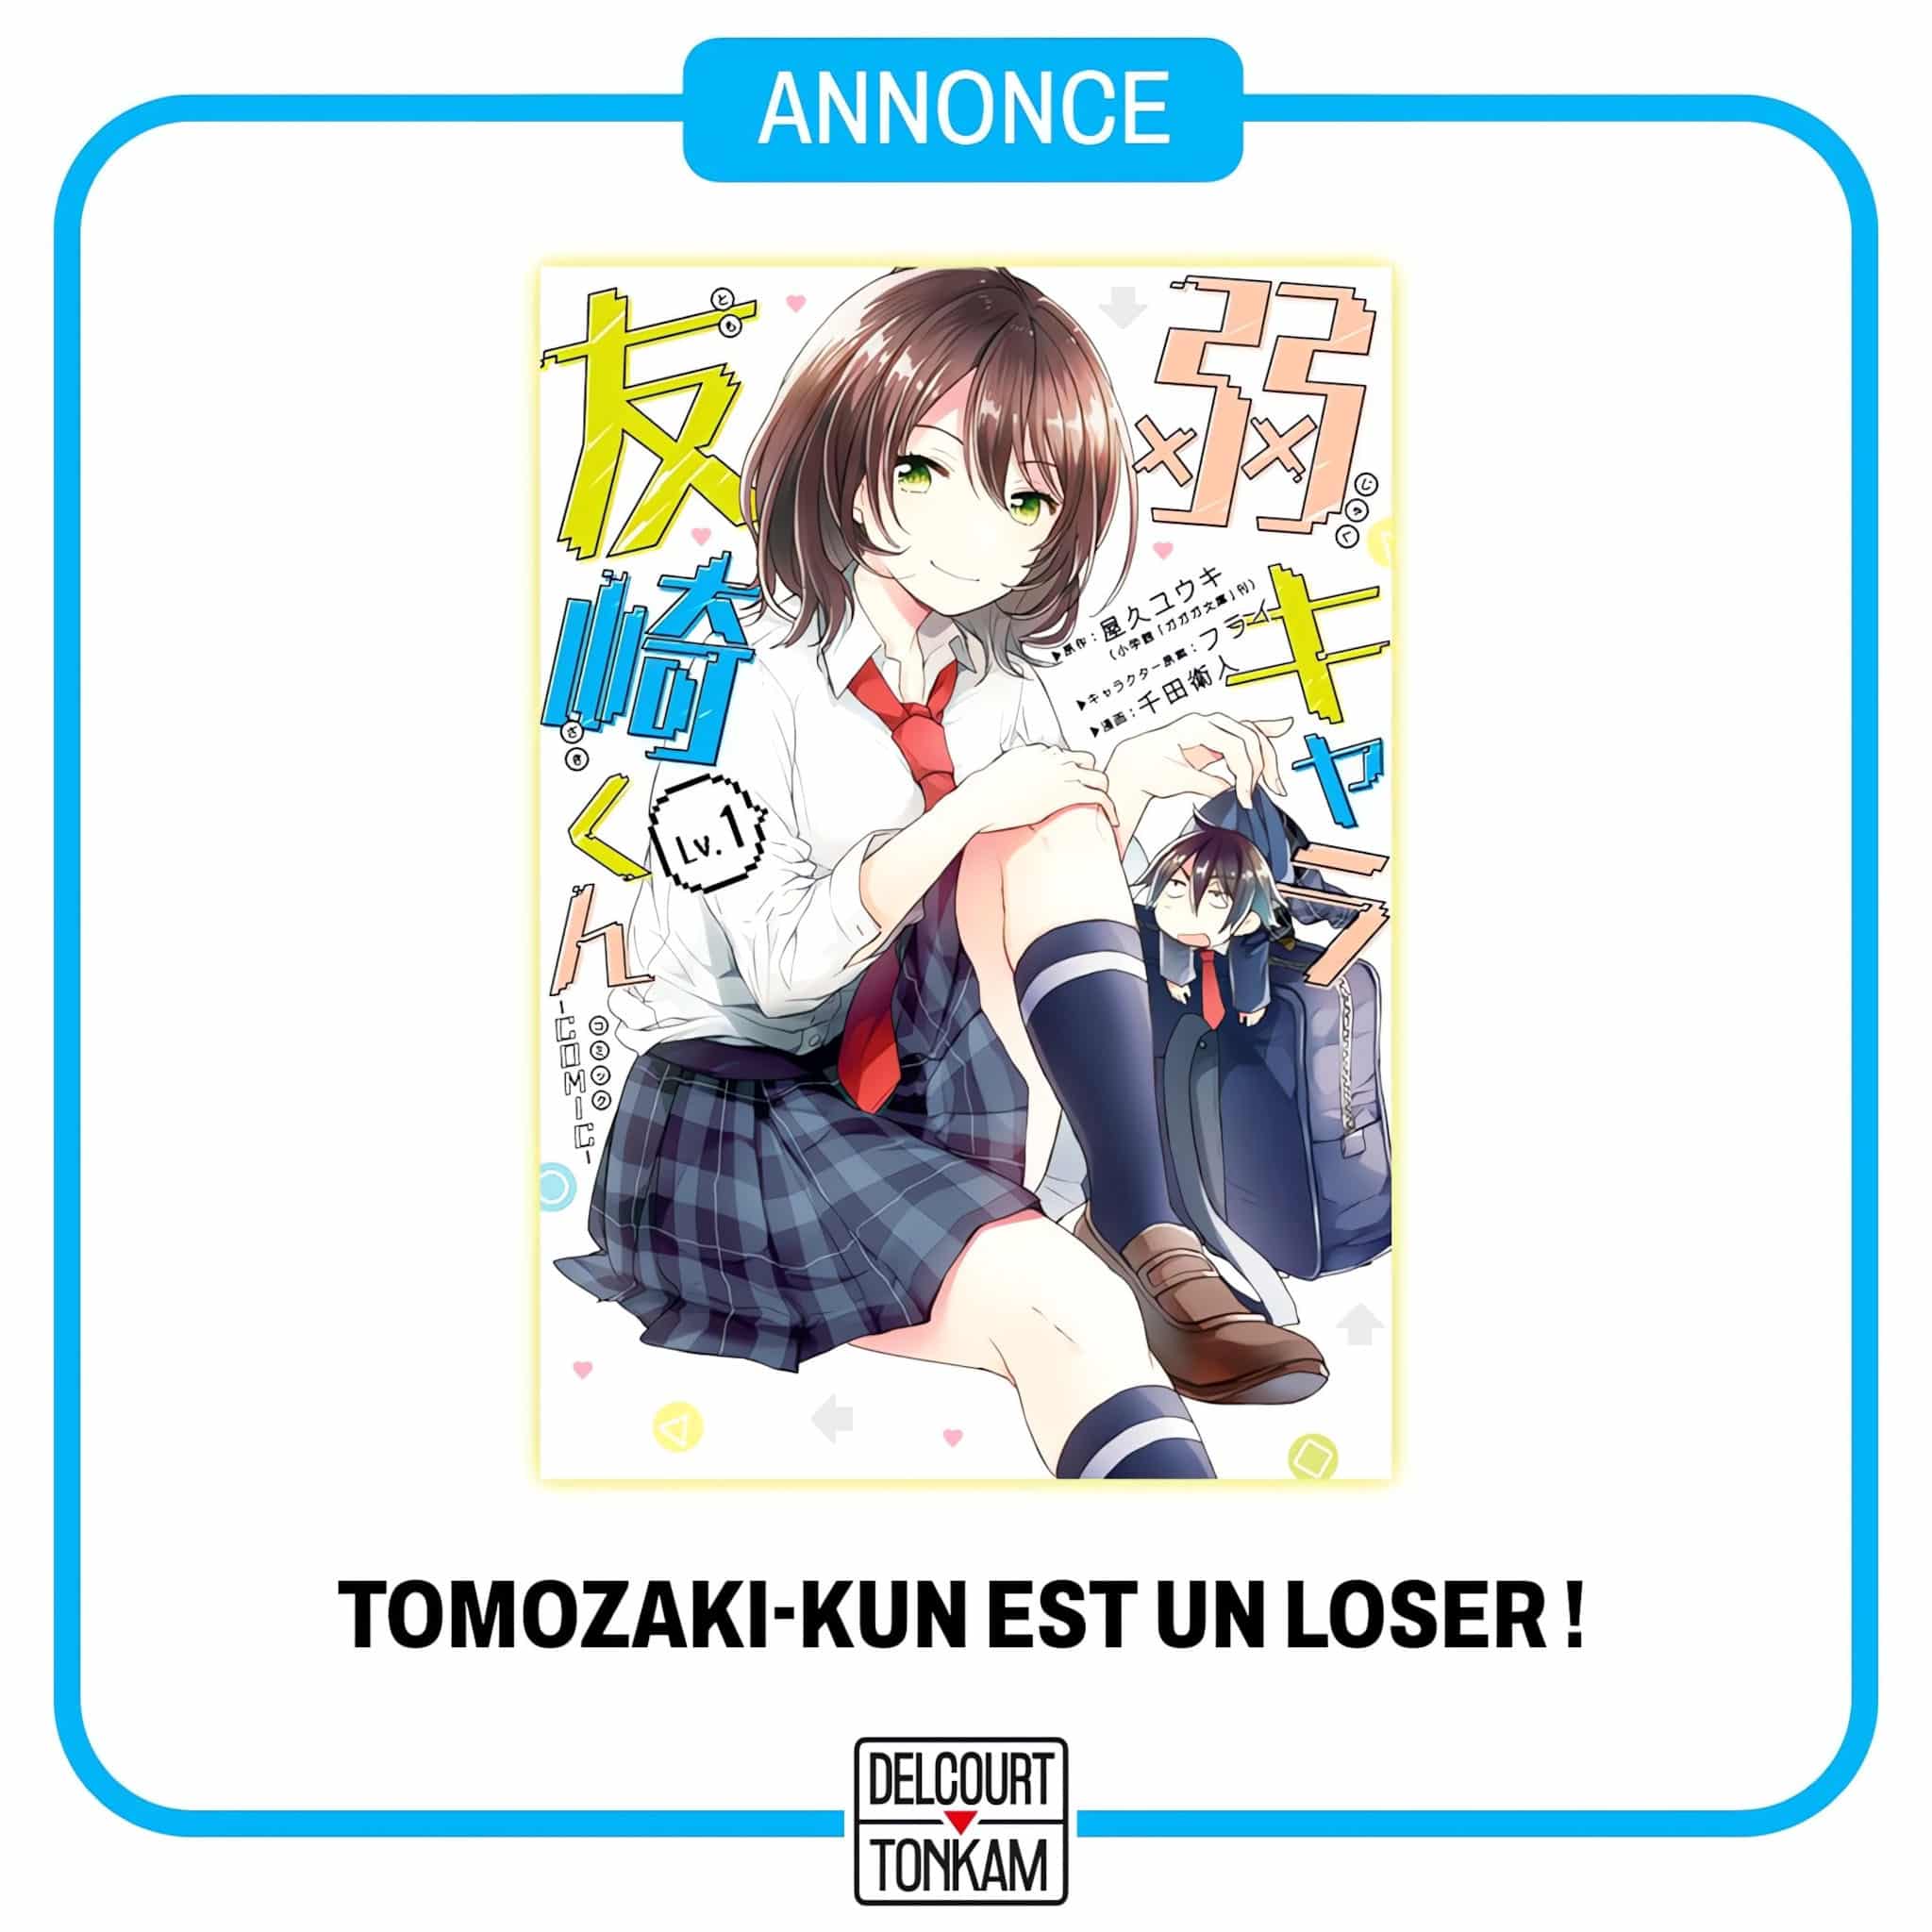 Annonce de la date de sortie en France du manga Tomozaki-kun est un loser aux éditions Delcourt/Tonkam.